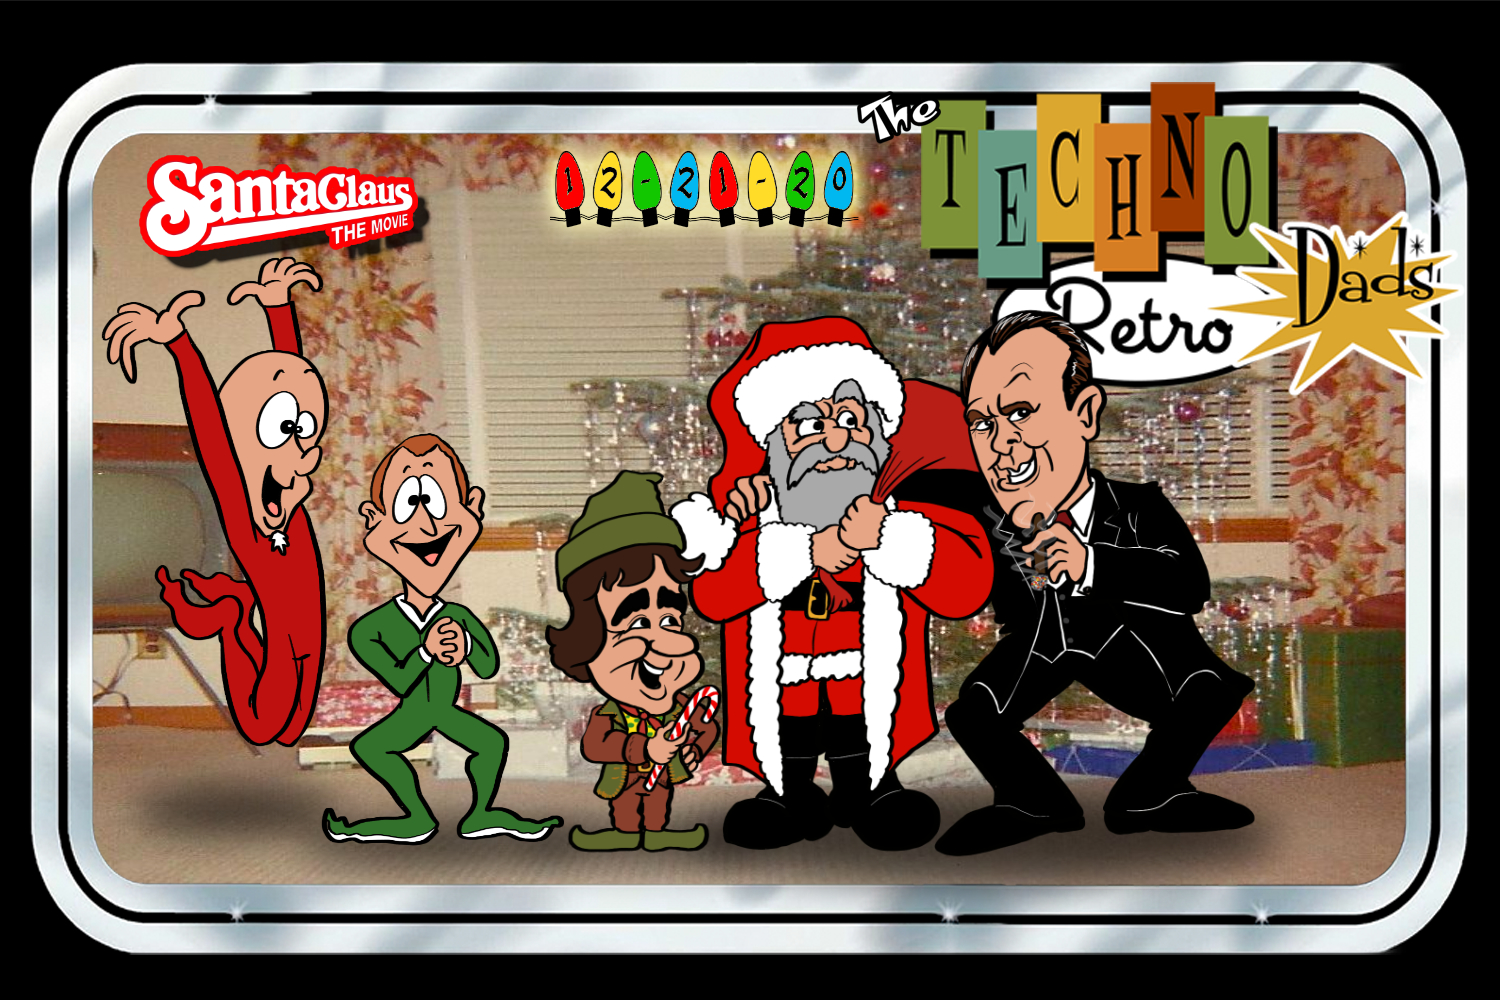 TechnoRetro Dads: TechnoRetro-Ho-Ho! Santa Claus the Movie!